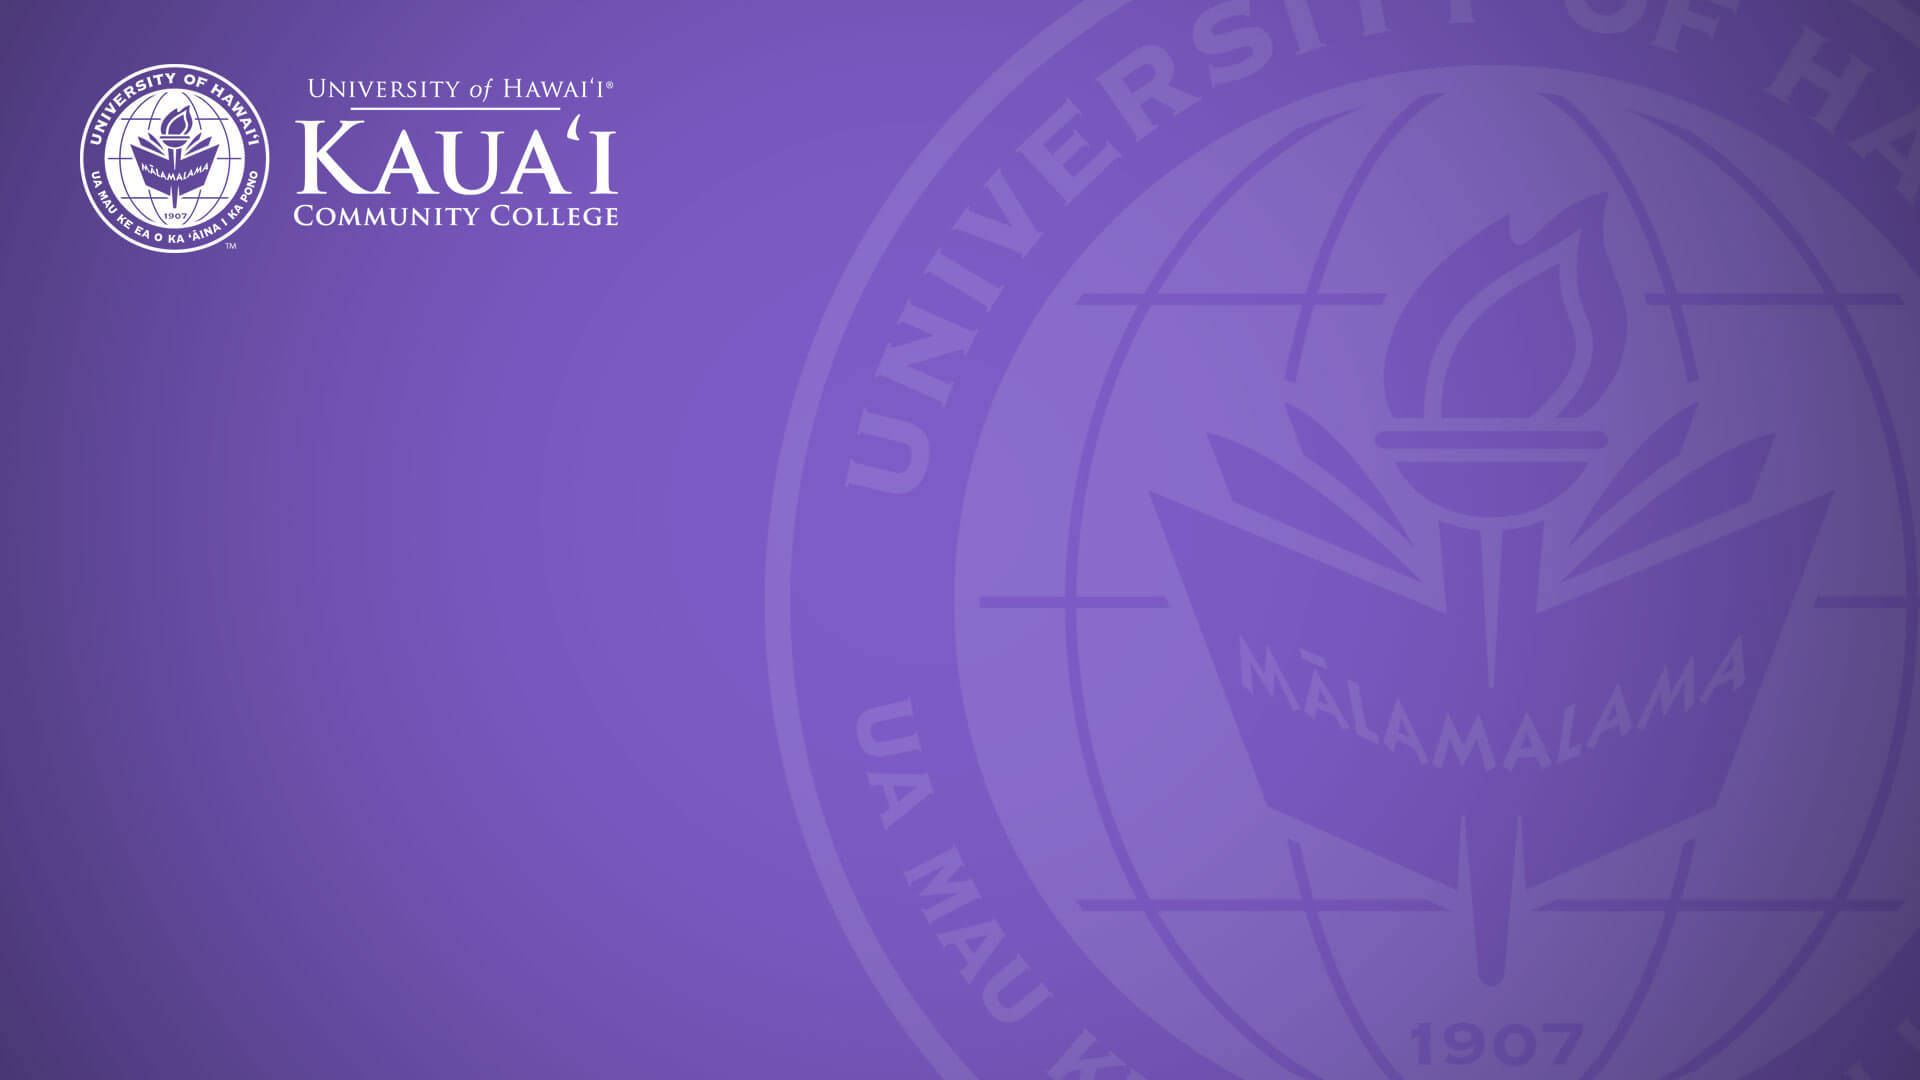 Universitätvon Hawaii Kauai-logo Violett Wallpaper